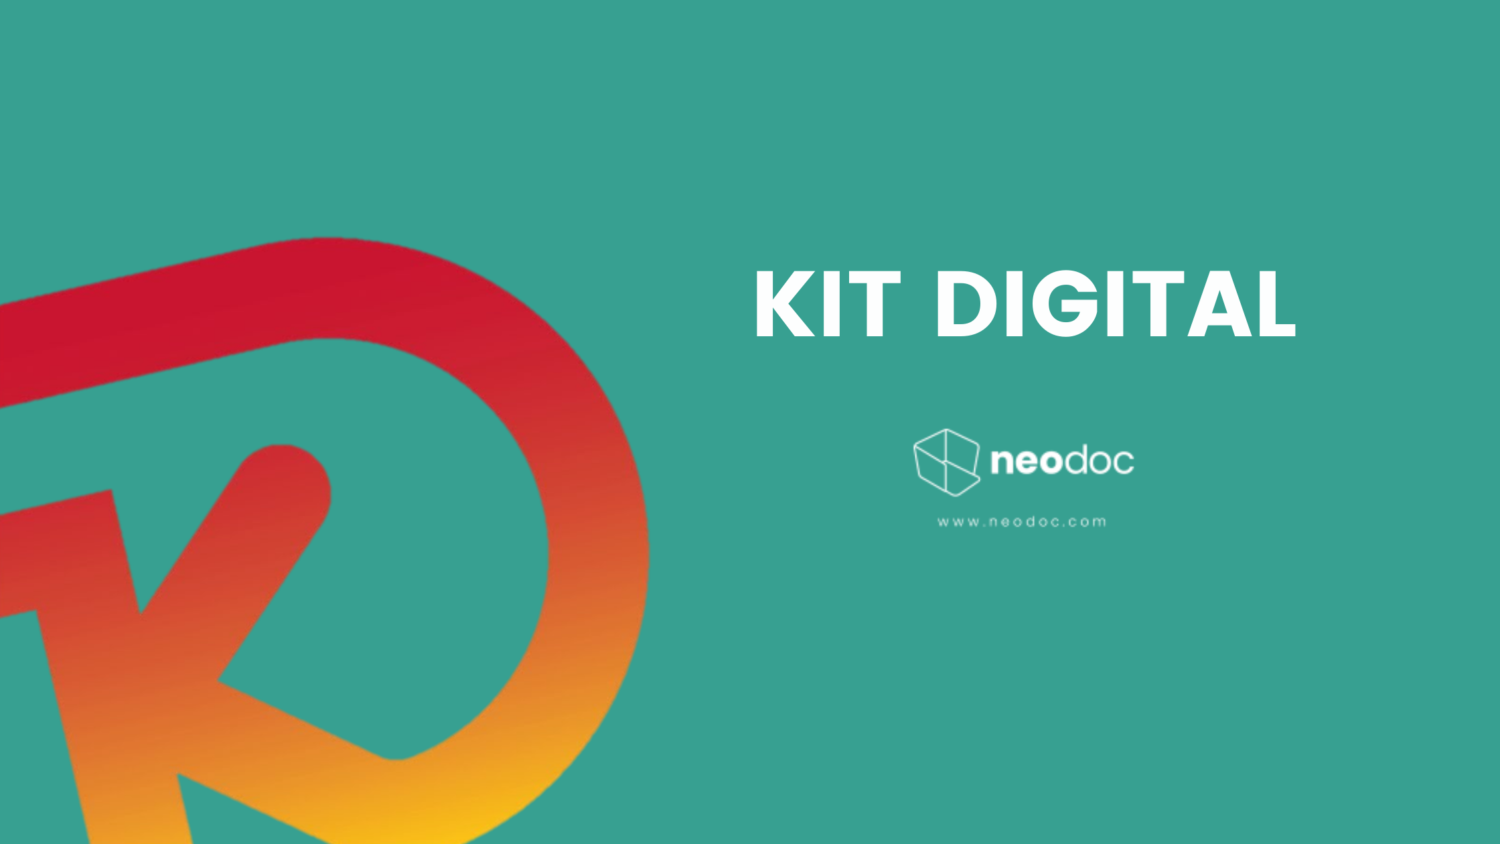 KIT DIGITAL 1 - ¿Cómo beneficiarse de las subvenciones del Kit Digital?